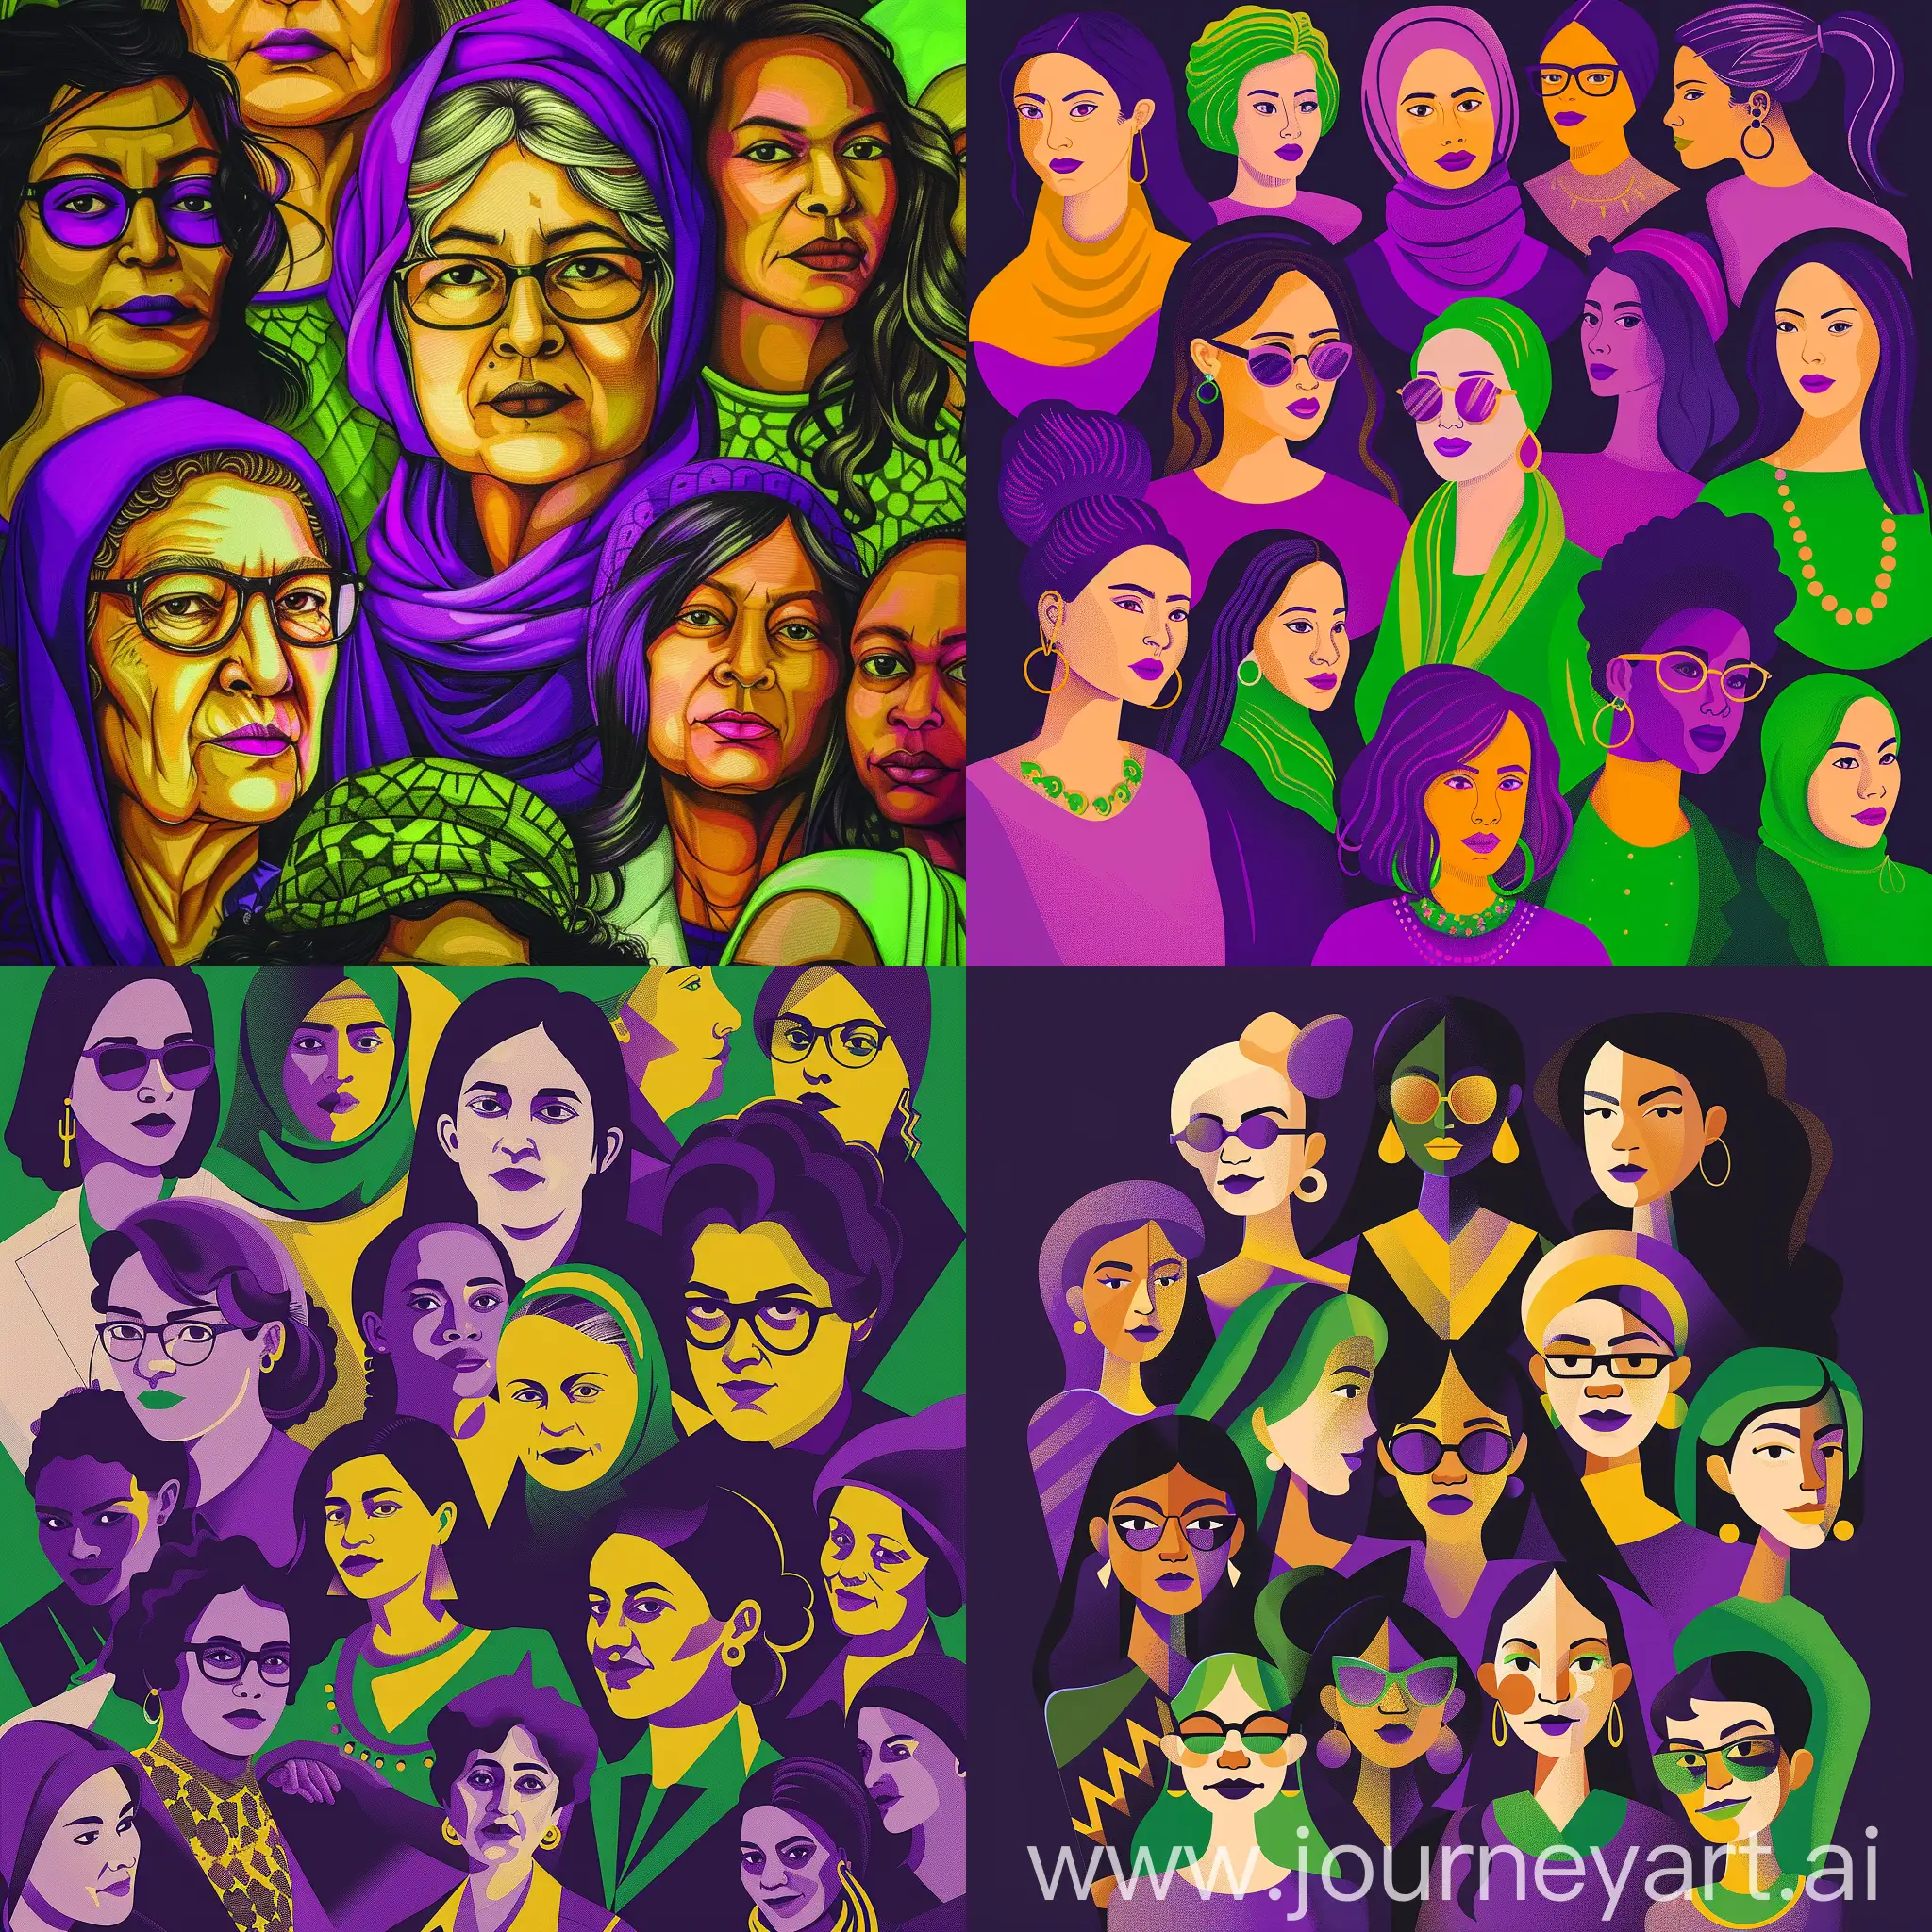 Mujeres de diferentes edades, etnias y profesiones, unidas en su fuerza en conmemoración del dia internacional de la mujer. Colores vibrantes: morado, verde y amarillo.